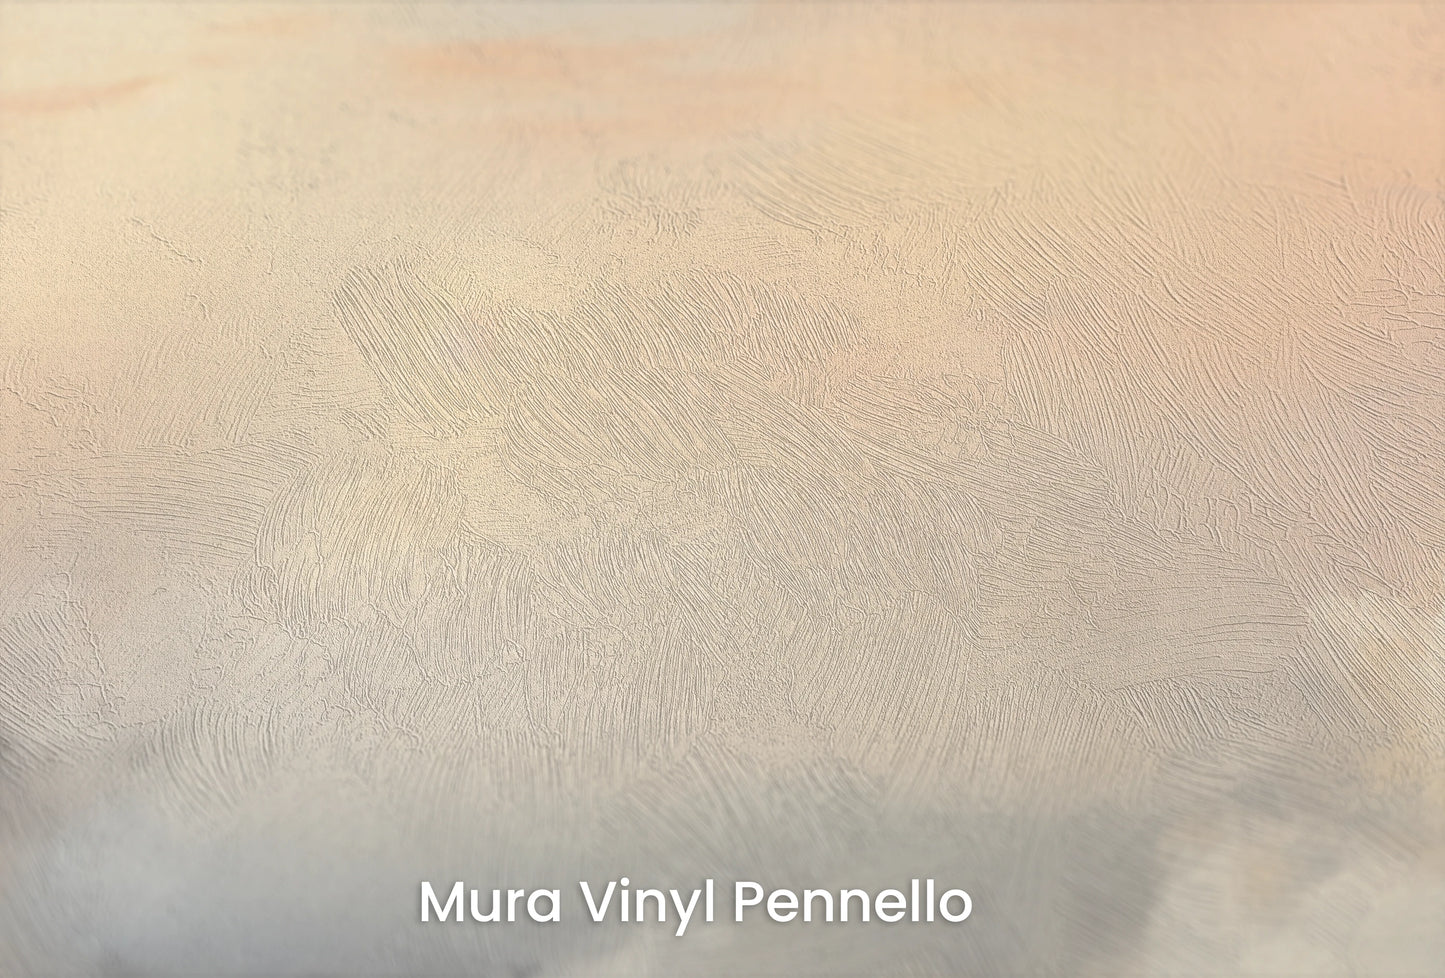 Zbliżenie na artystyczną fototapetę o nazwie Misty Morning Hues na podłożu Mura Vinyl Pennello - faktura pociągnięć pędzla malarskiego.